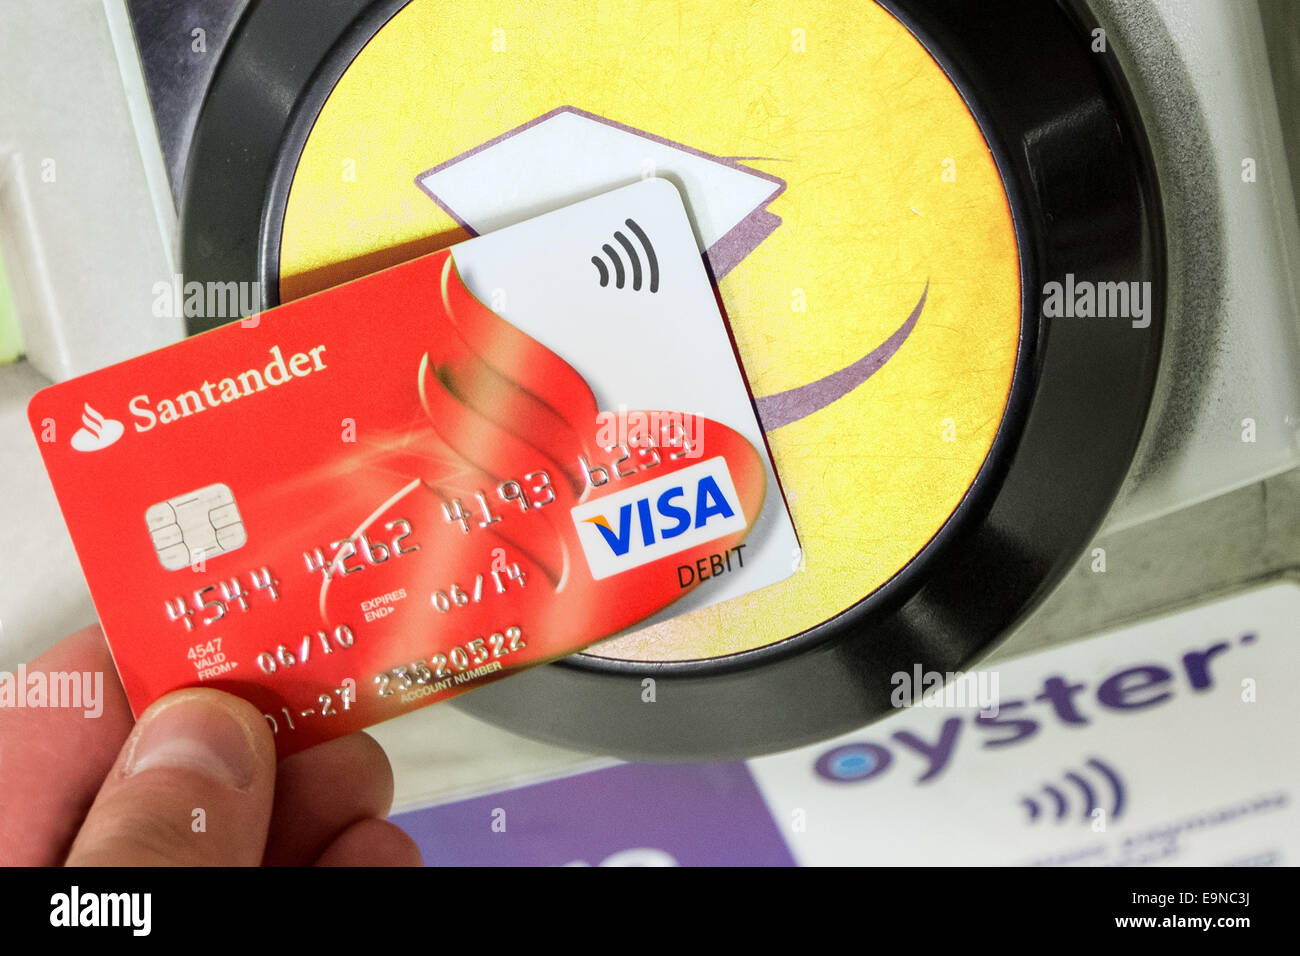 Kontaktlose Santander Visa-Karte für Reisen Zahlung an u-Bahnstation verwendet wird. Stockfoto